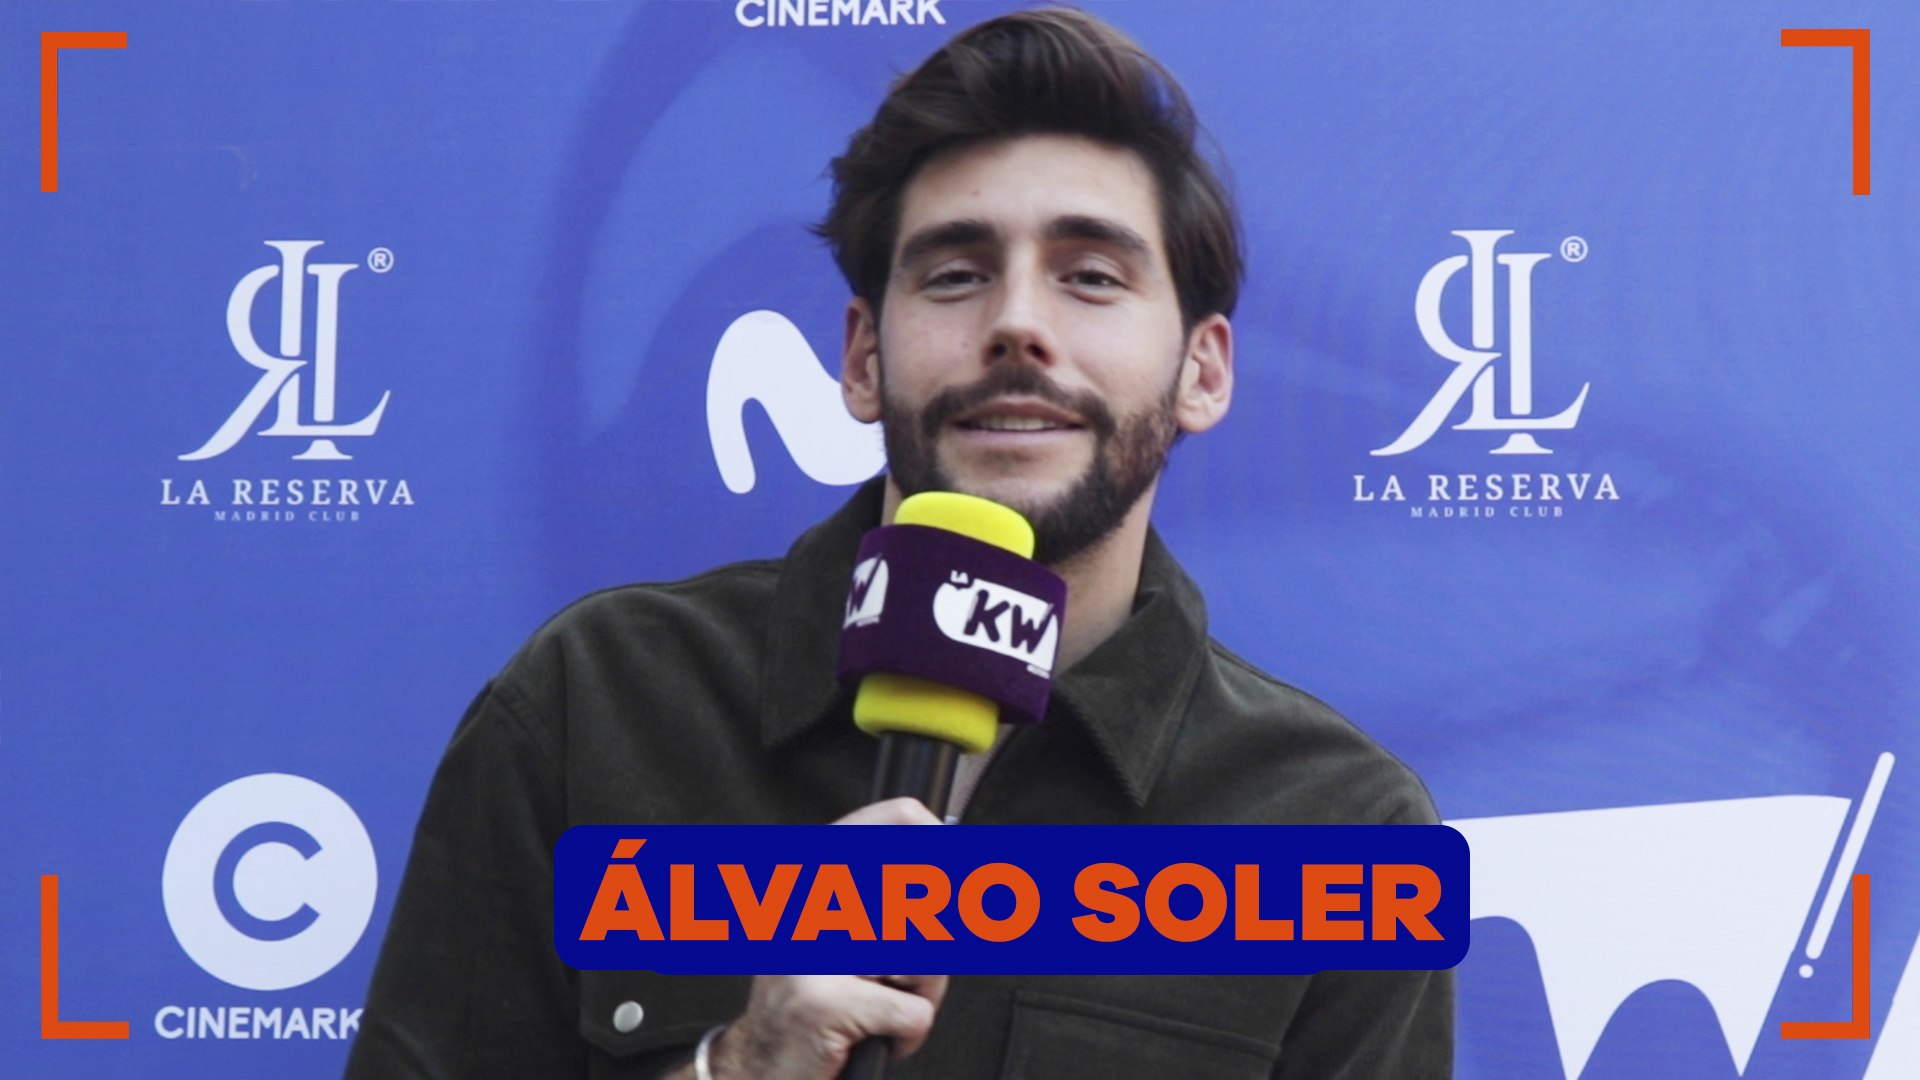 Alvaro Soler desnuda las emociones de “Oxígeno” en una reveladora entrevista